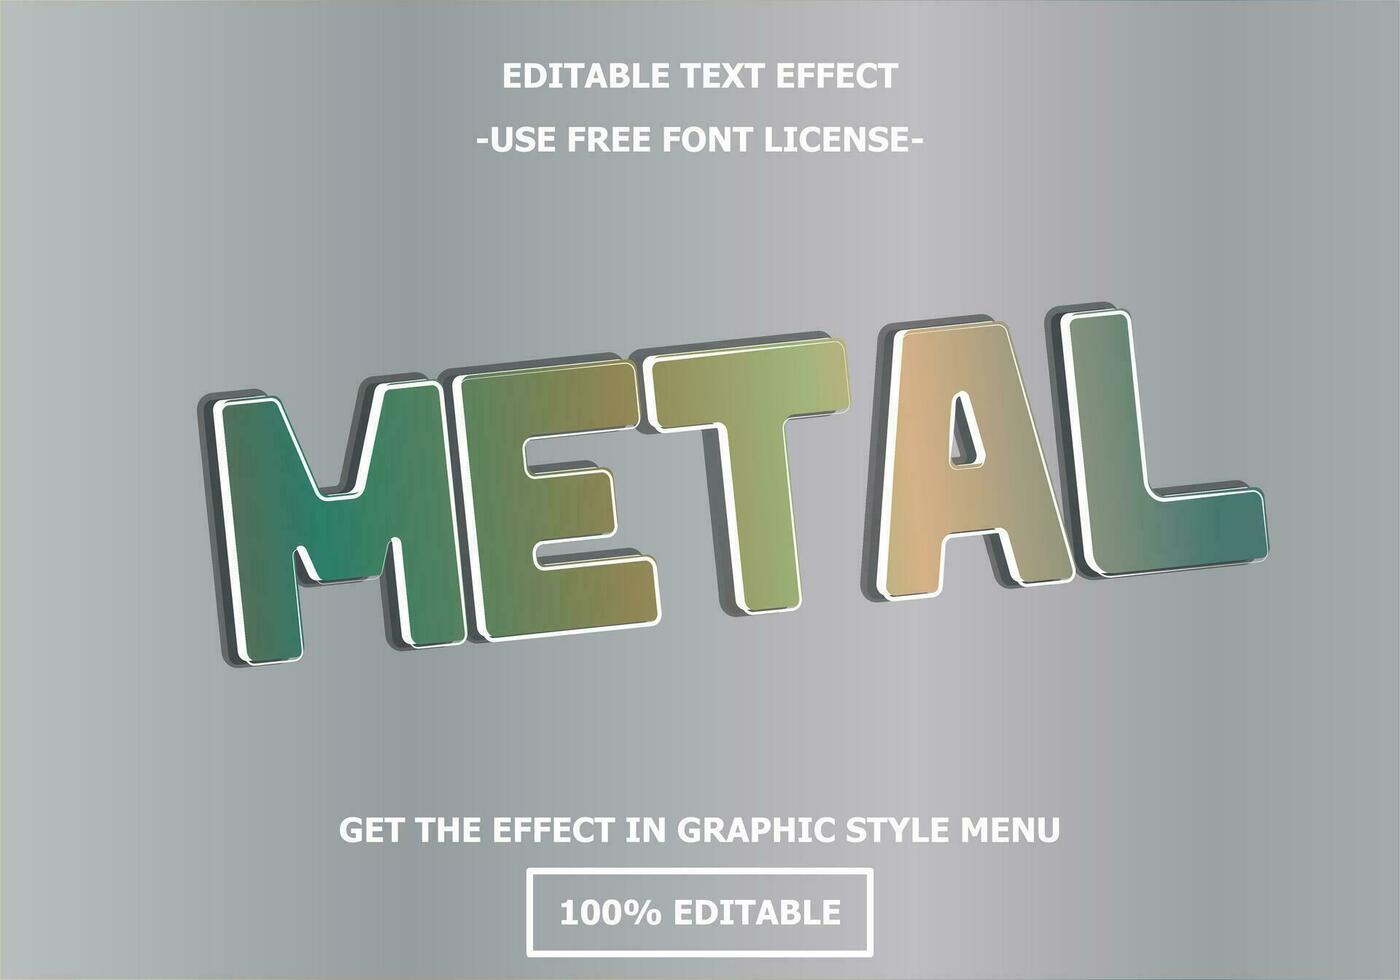 Metall 3d editierbar Text bewirken Vorlage. Stil Prämie kostenlos Schriftart Lizenz Vektor